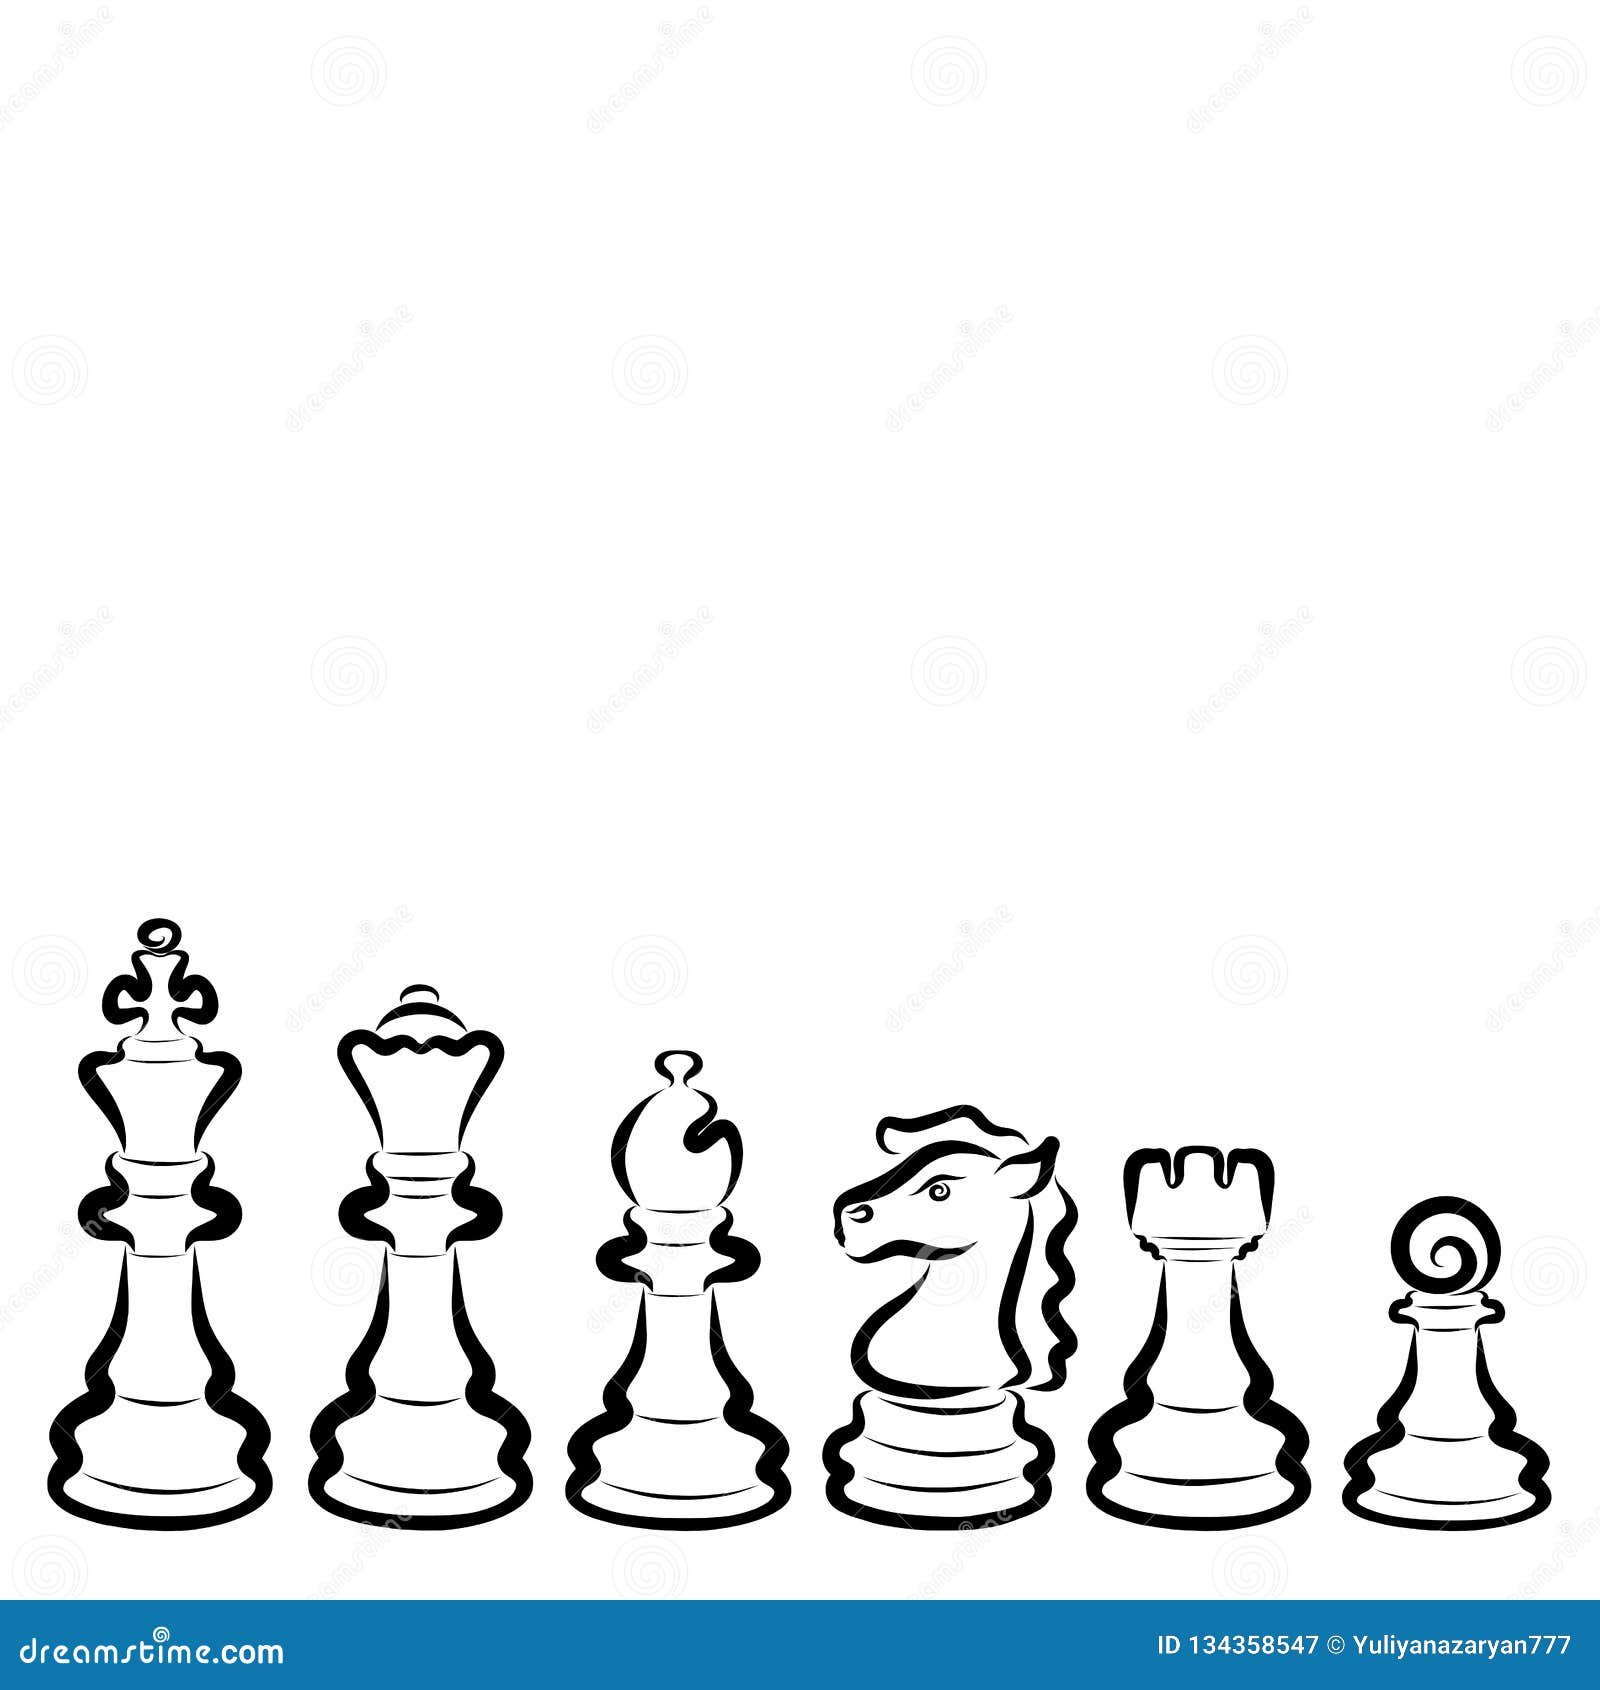 Шахматные фигуры на белом фоне для оформления